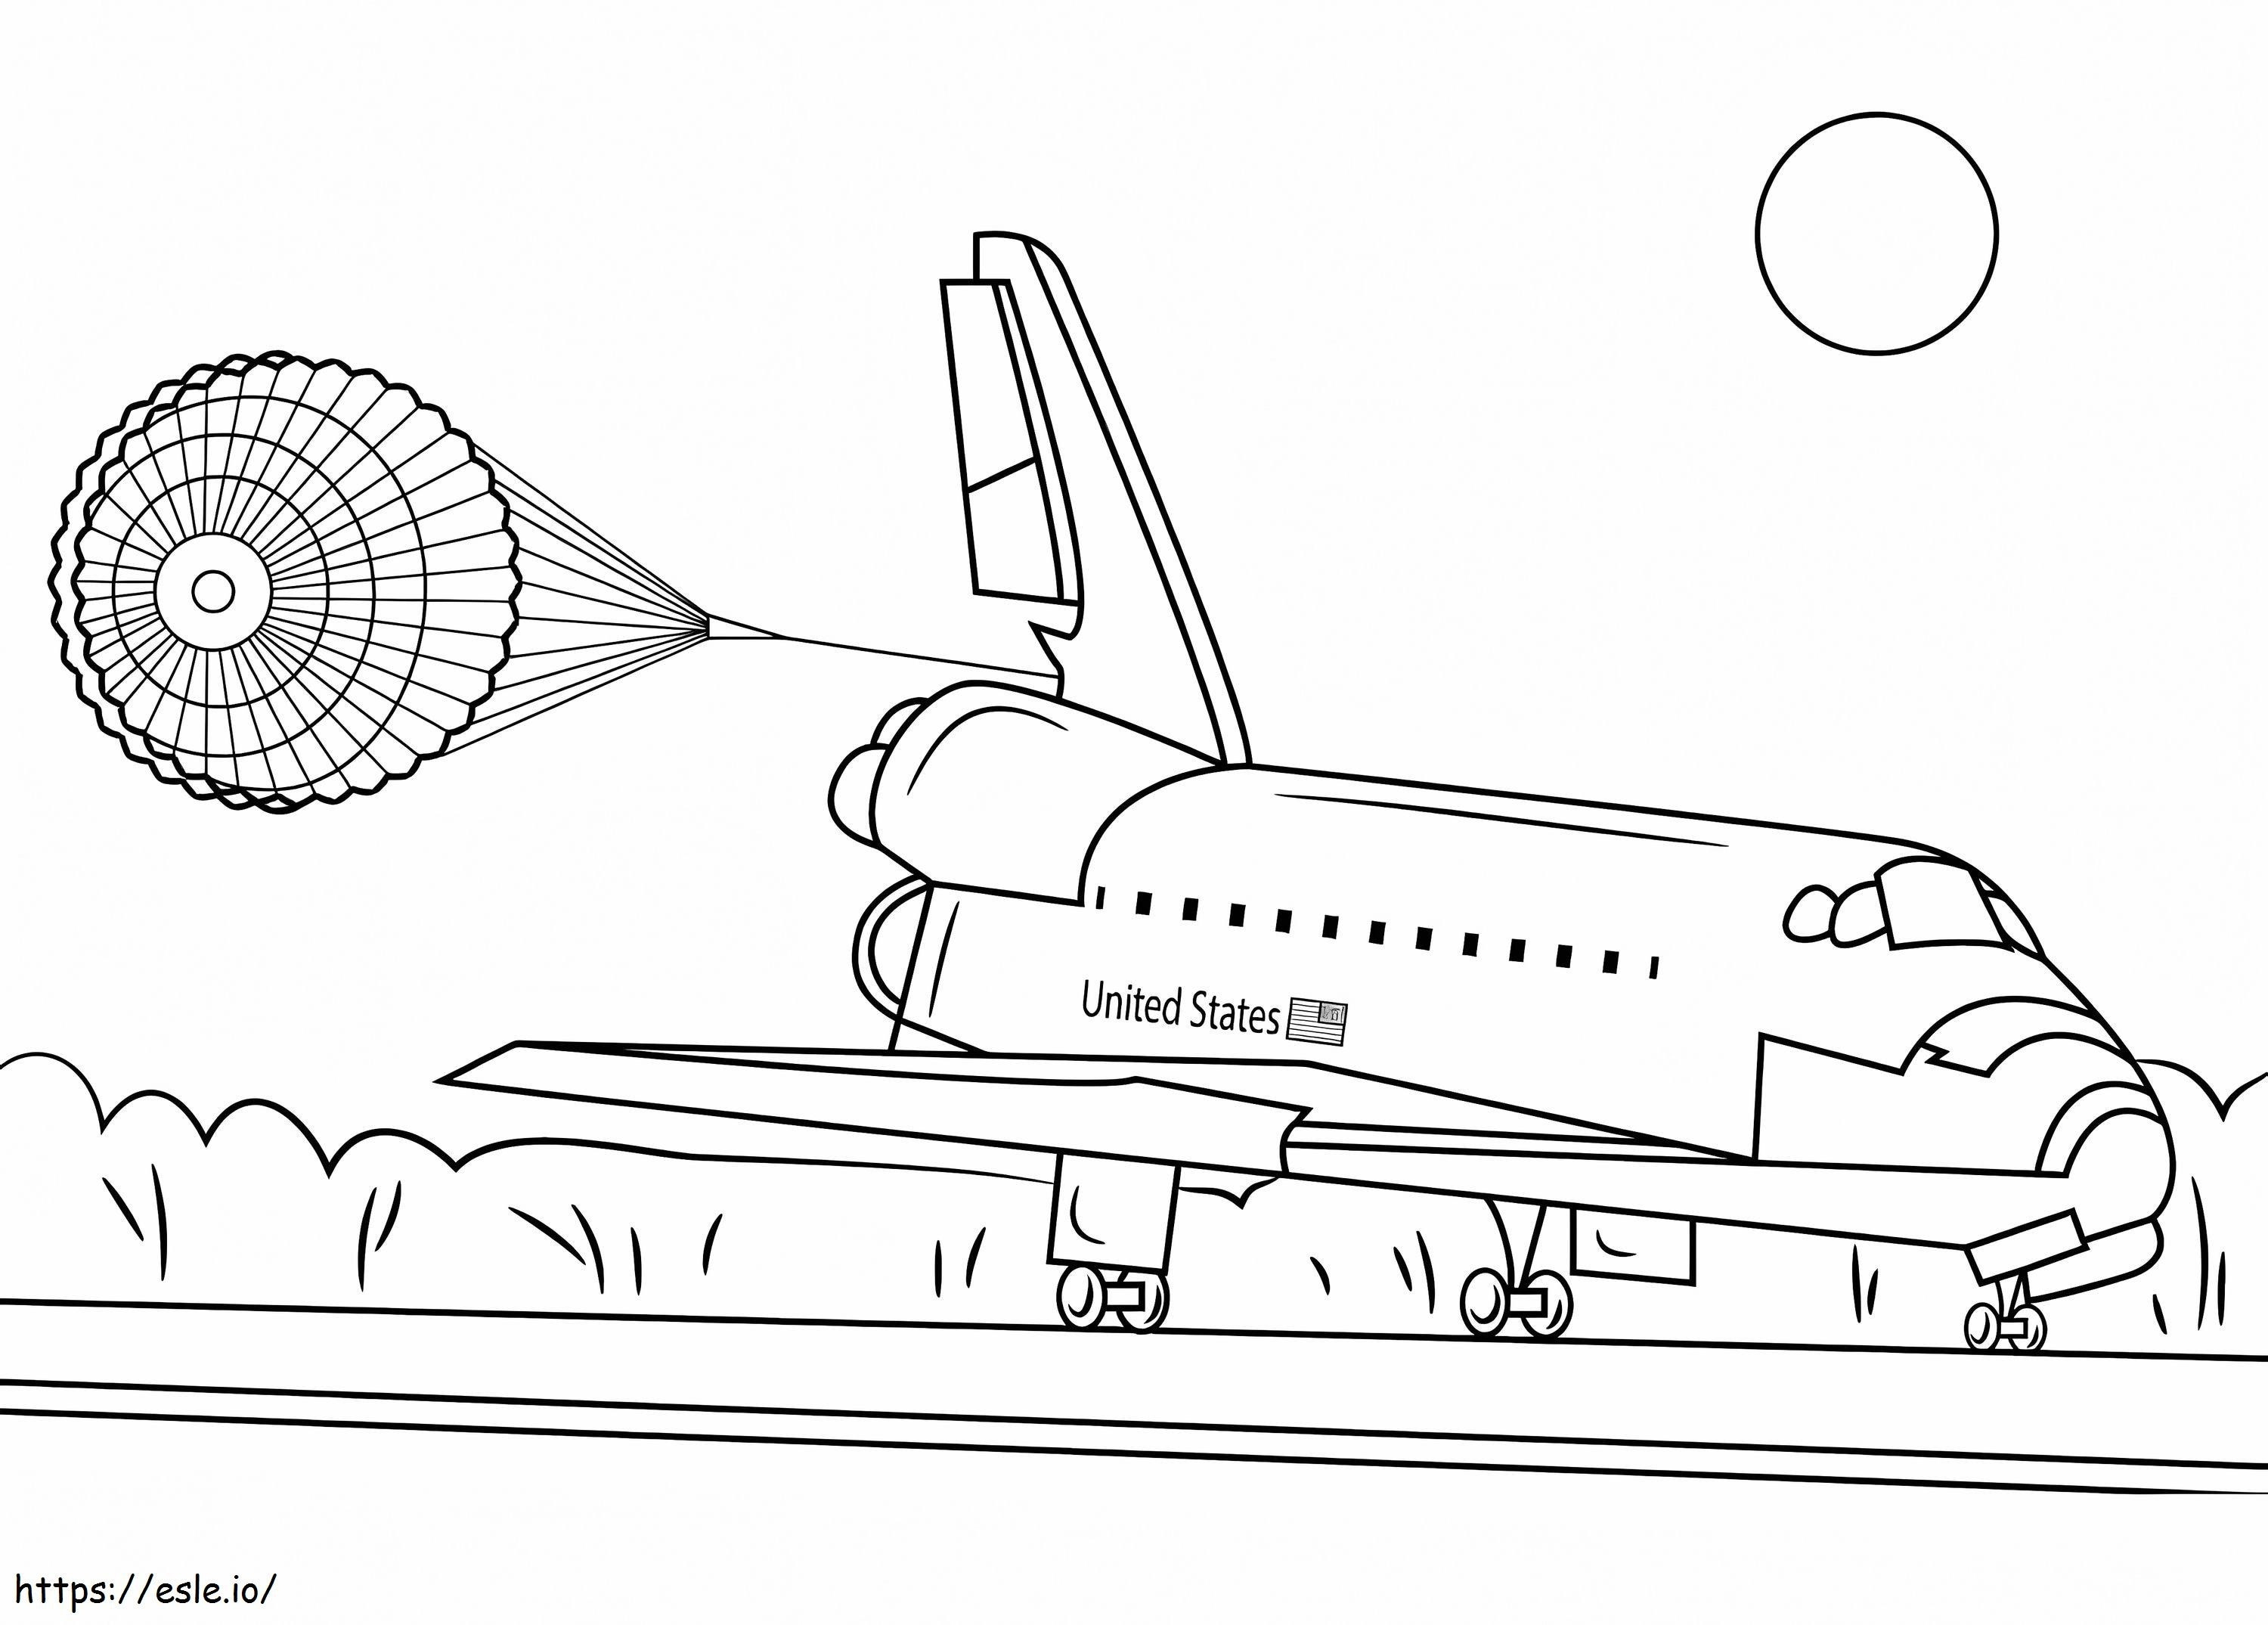 Coloriage Atterrissage de la navette spatiale Endeavour à imprimer dessin